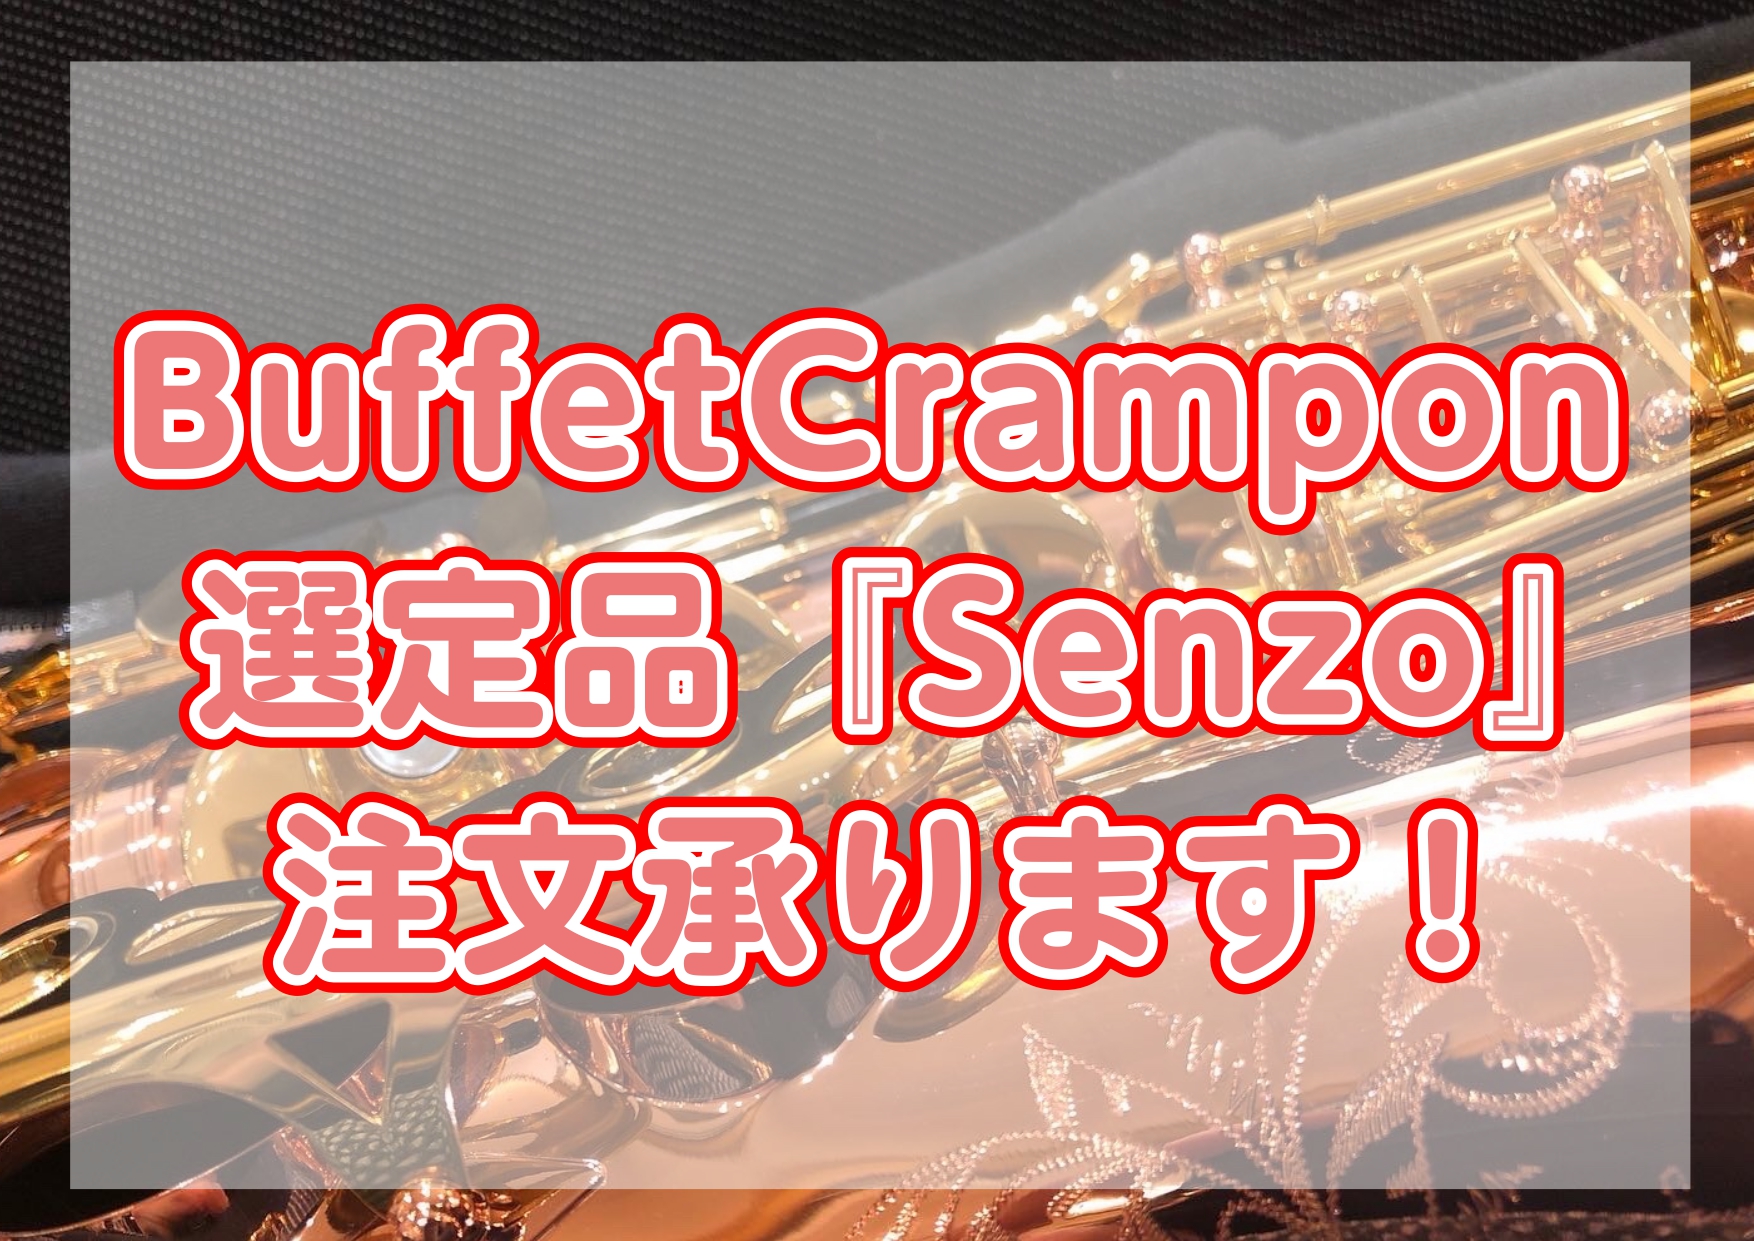 こんにちは、管楽器担当の駒井です！ 私も愛用しているBuffetCramponサックス『Senzo』ですが、実はプロの奏者の選定品を承ることができます！今回のHPでは過去のお取引を例に、選定品注文の流れなどをご紹介していきます。 CONTENTS選定品とは？BuffetCrampon『Senzo』の […]